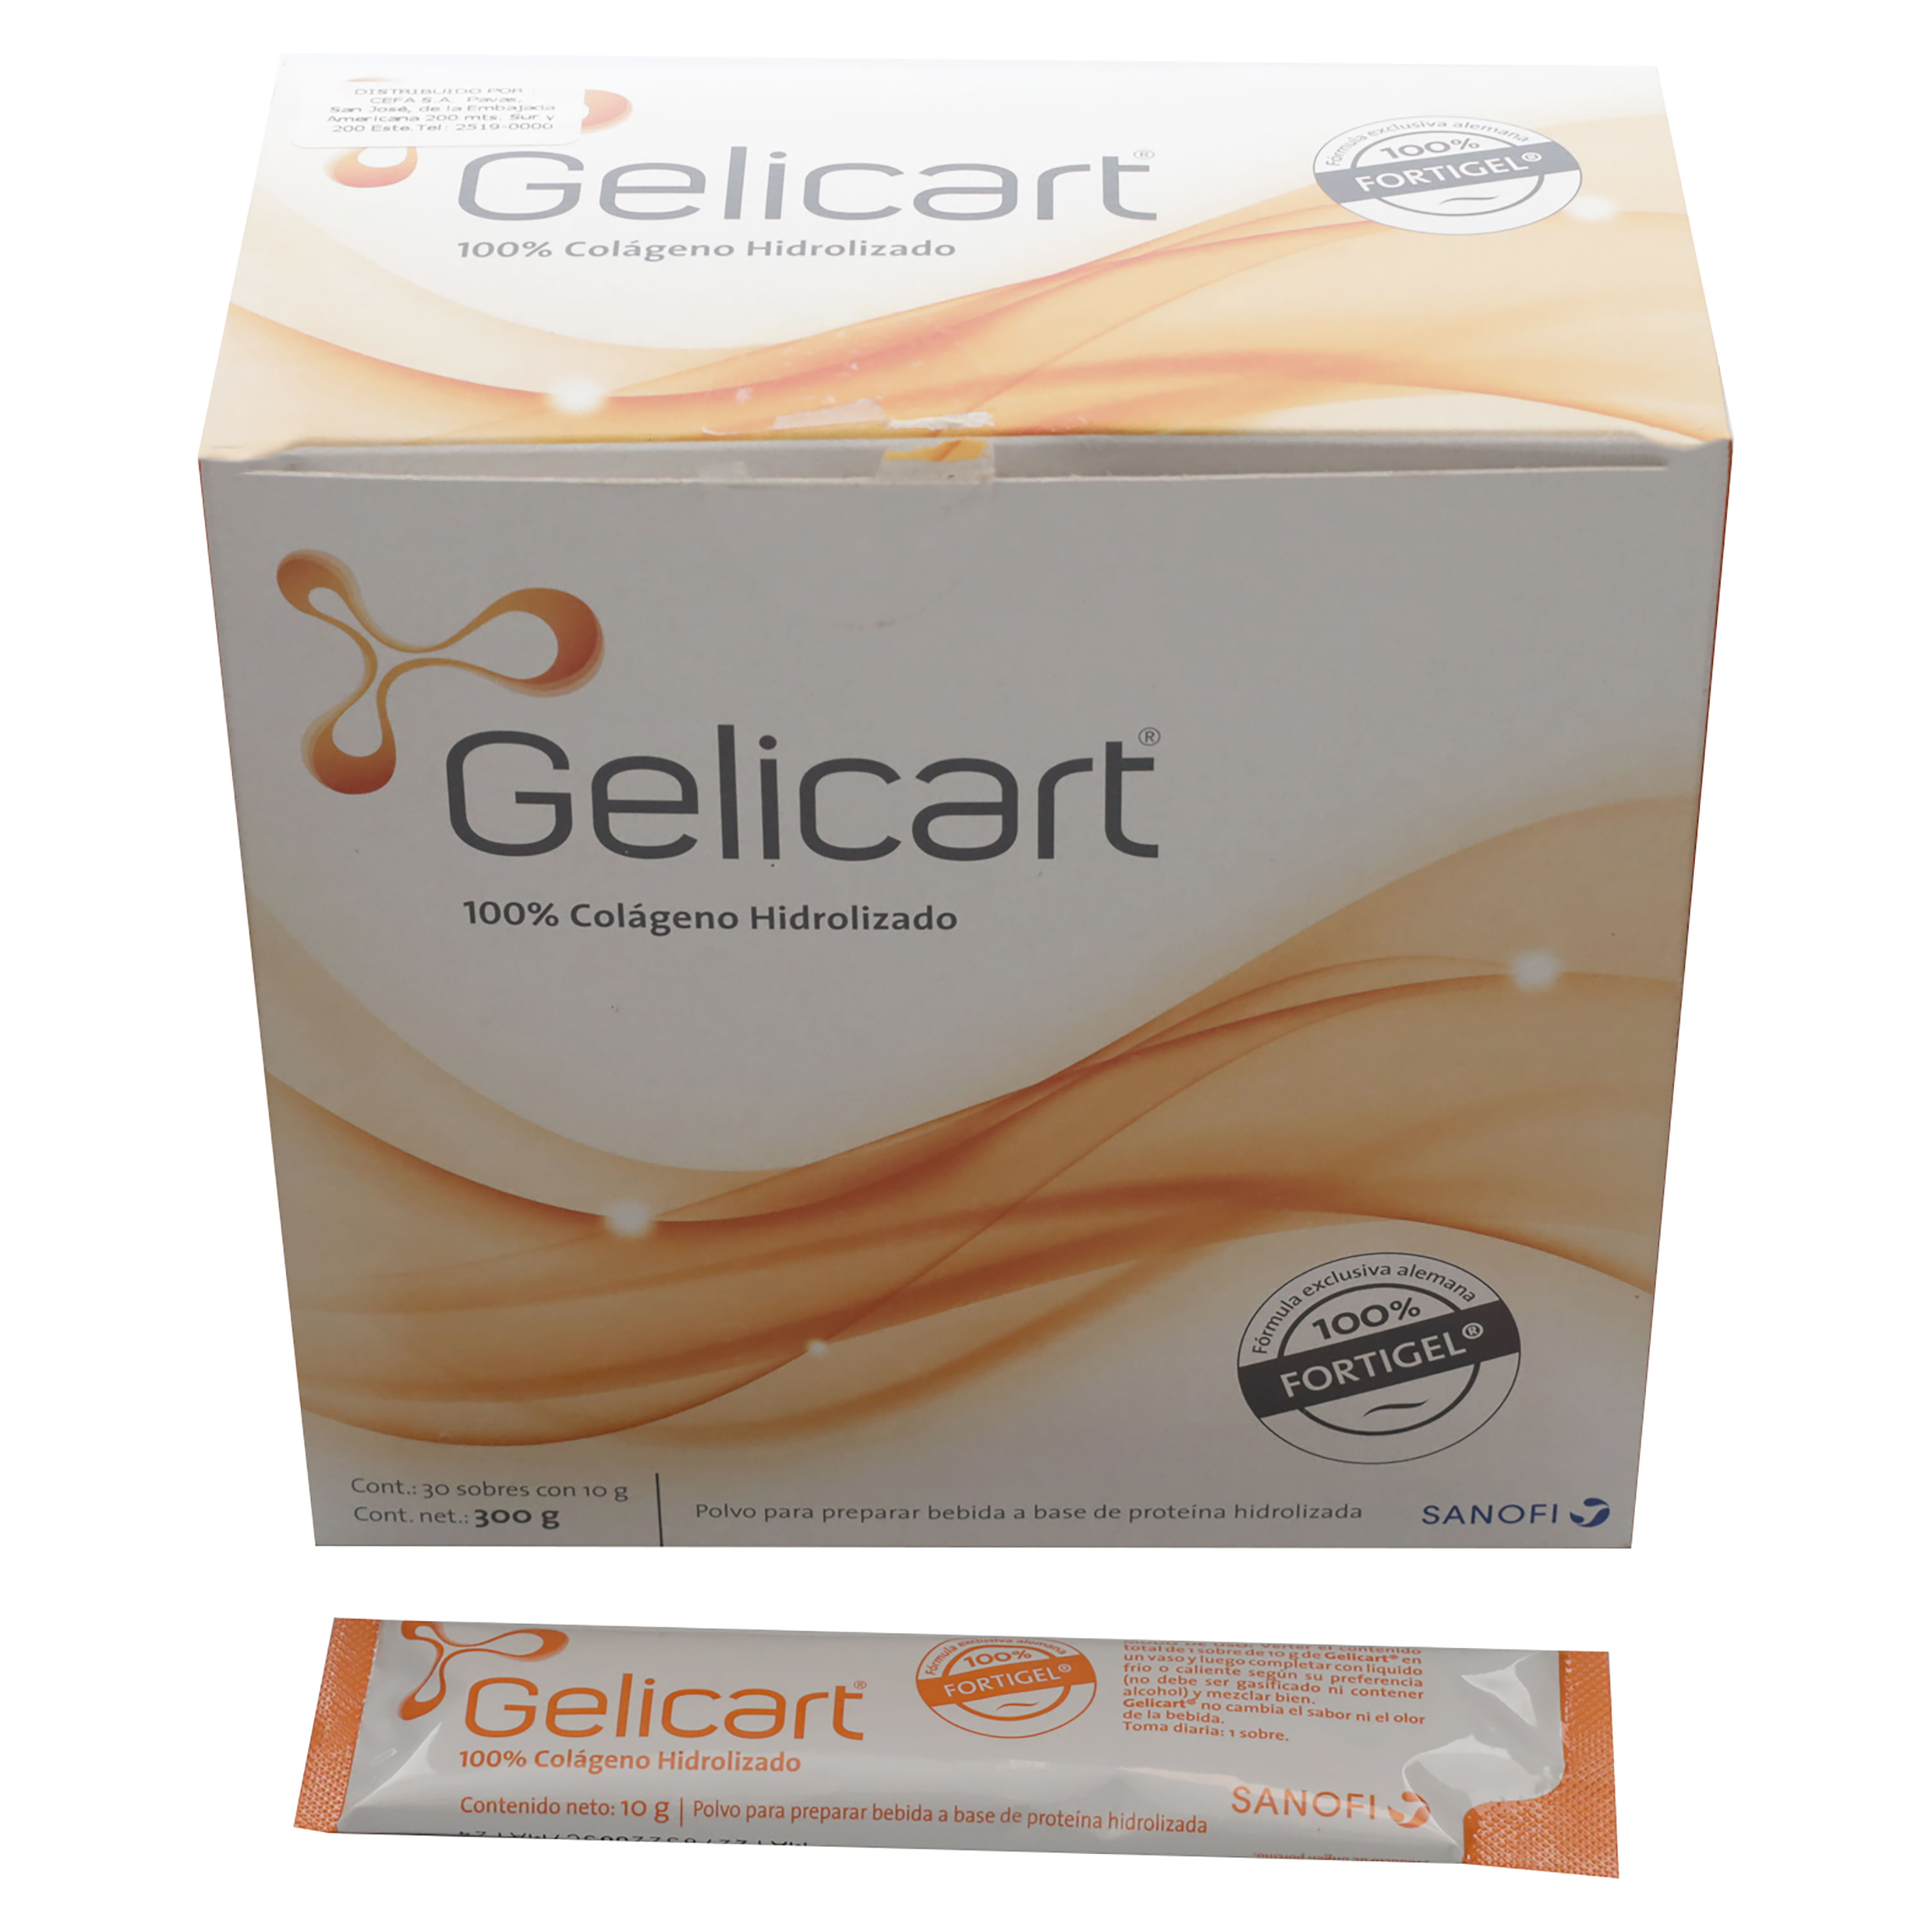 Gelicart-Soluci-n-Oral-30-Sobres-1-20362